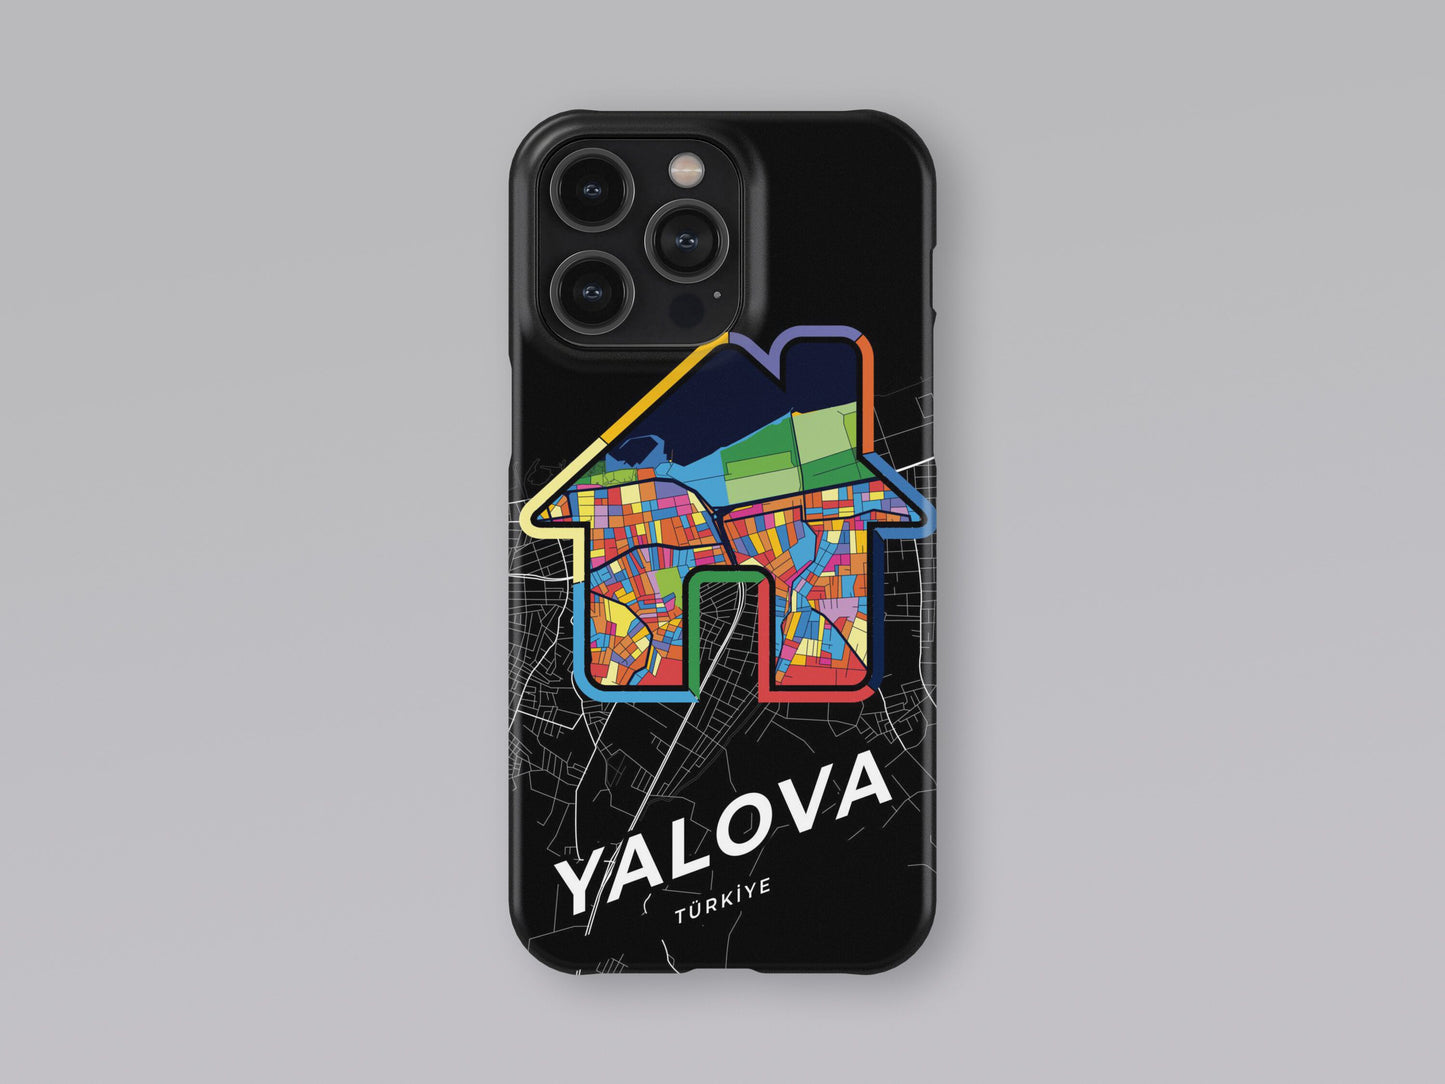 Yalova Turkey slim phone case with colorful icon 3